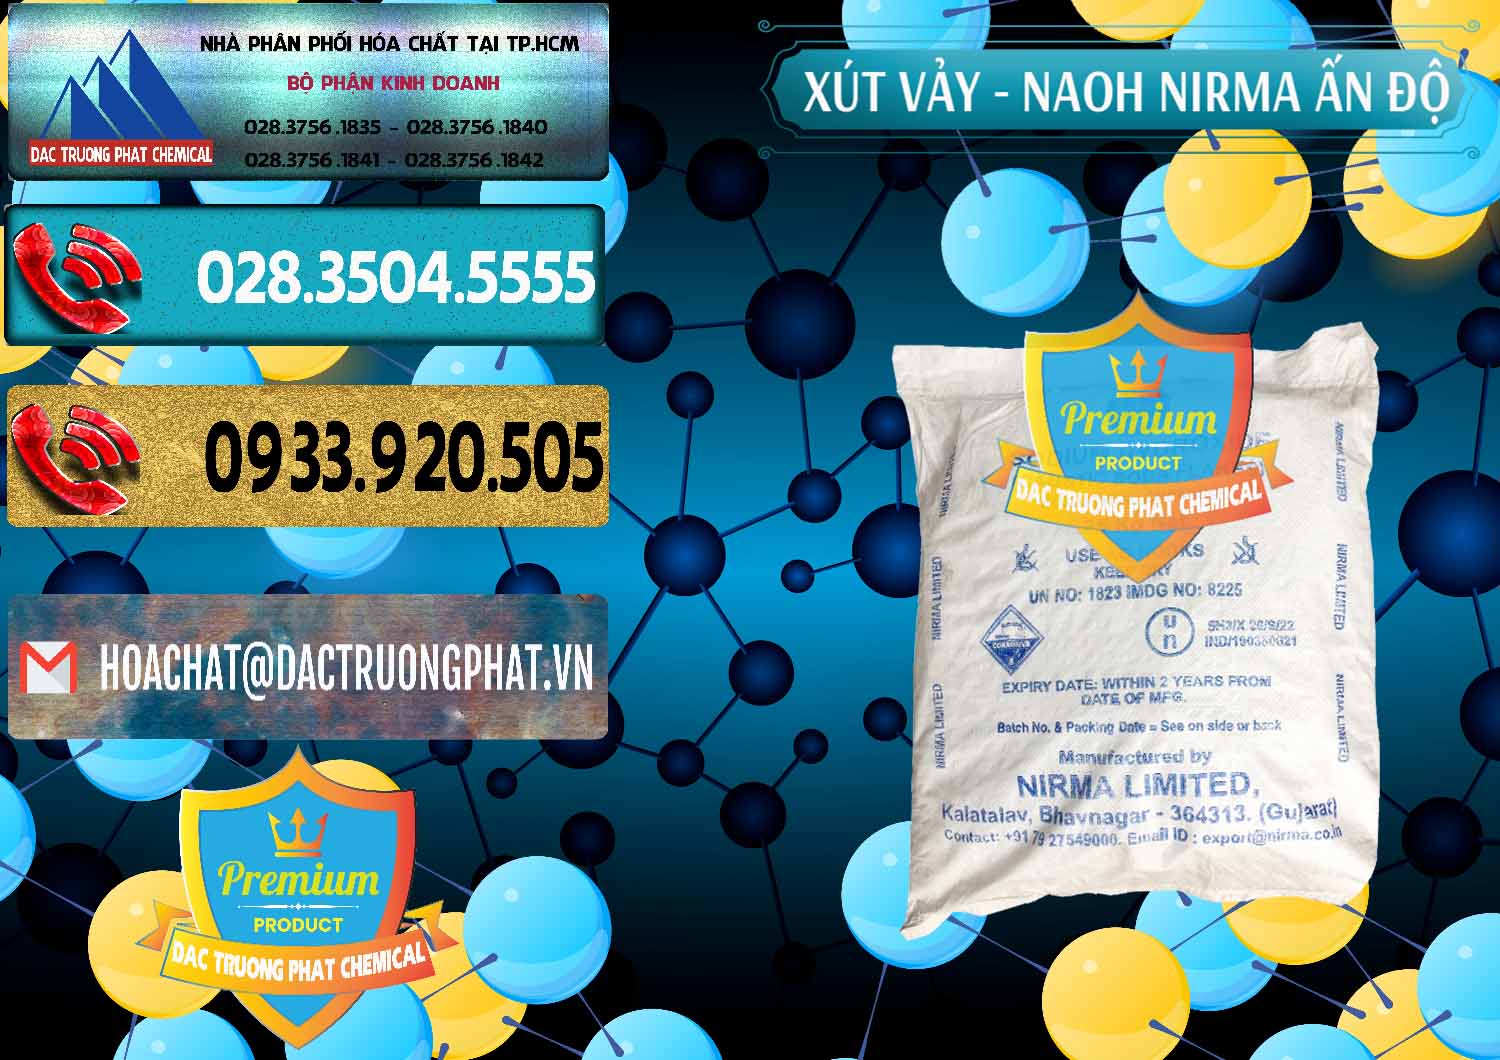 Nơi cung cấp ( bán ) Xút Vảy - NaOH Vảy Nirma Ấn Độ India - 0371 - Công ty cung cấp ( nhập khẩu ) hóa chất tại TP.HCM - hoachatdetnhuom.com